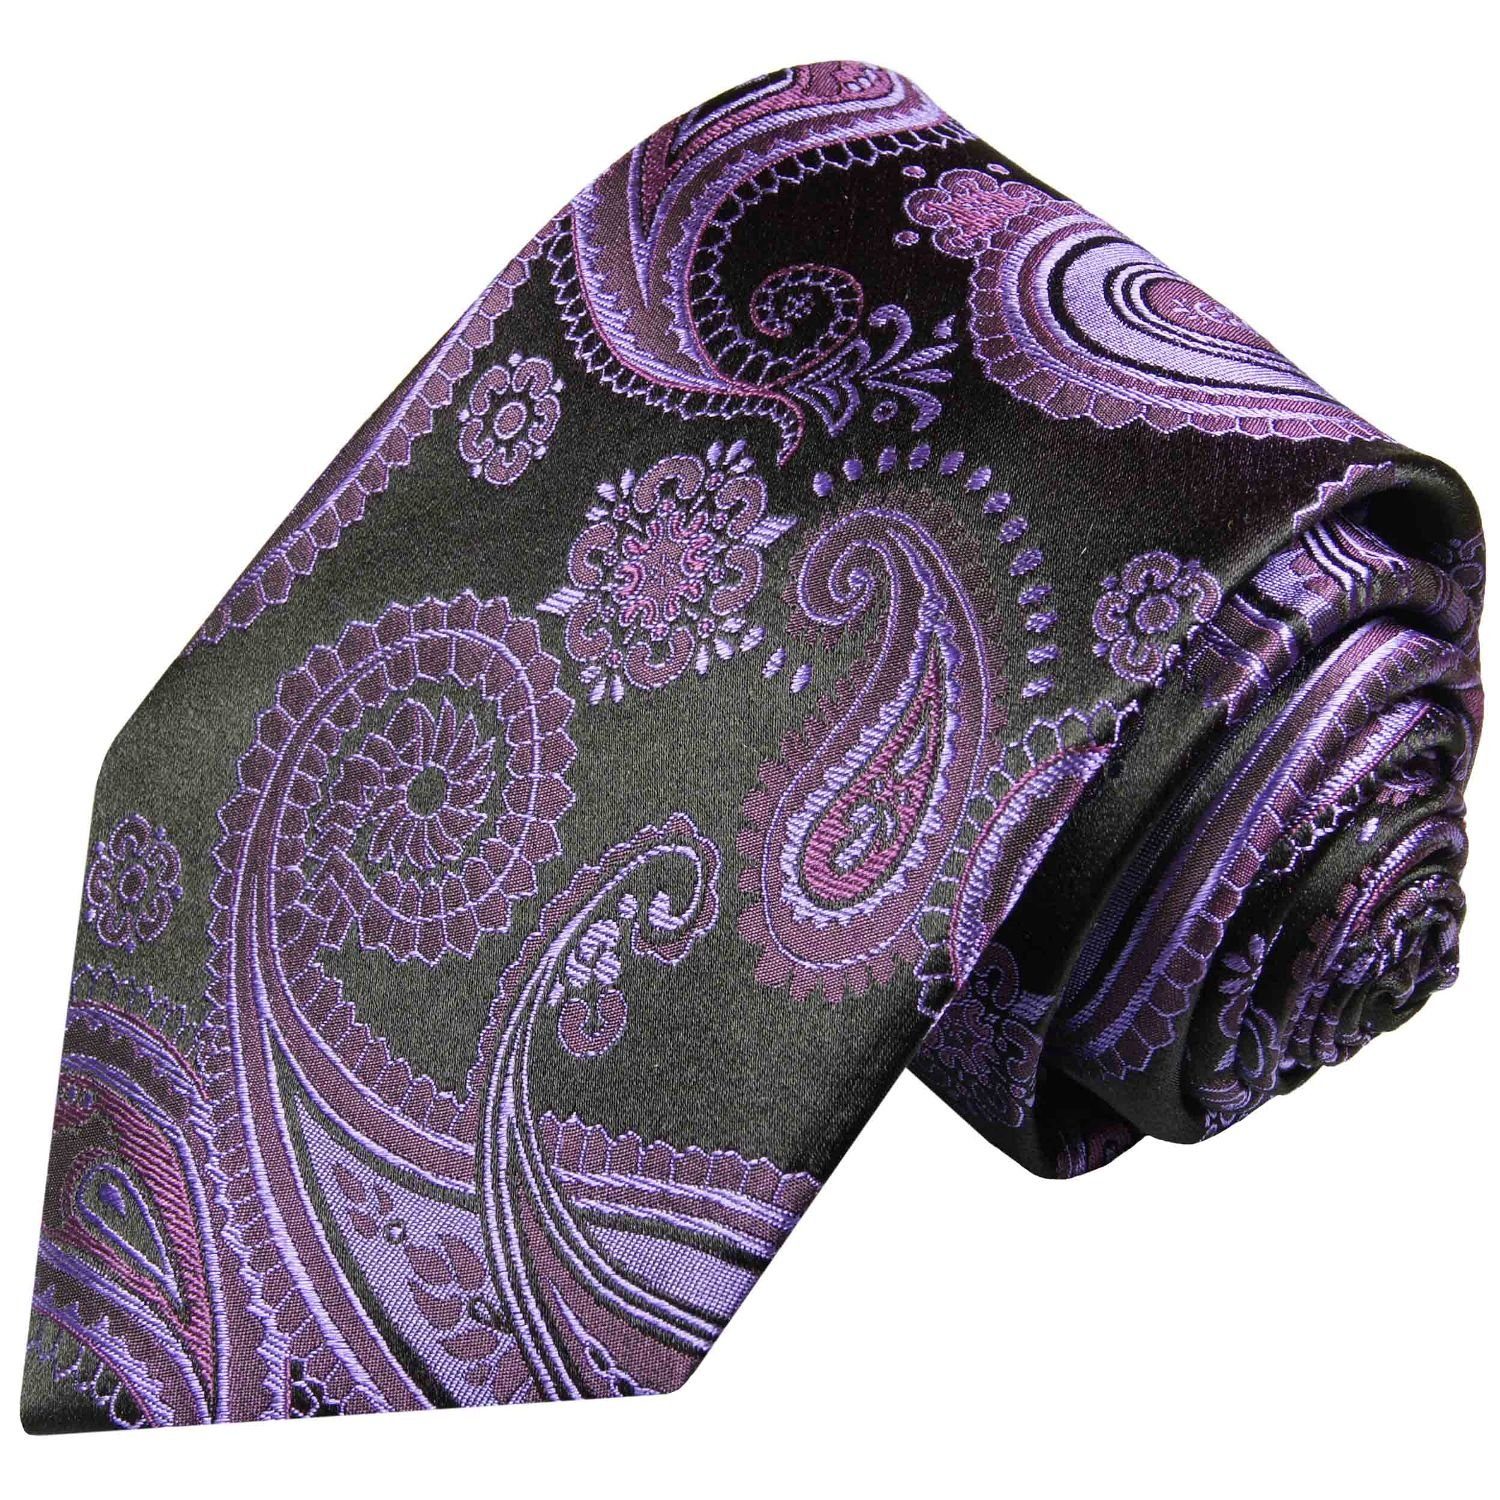 Paul Malone Krawatte Elegante Seidenkrawatte Herren Schlips paisley brokat 100% Seide Schmal (6cm), lila violett schwarz 363